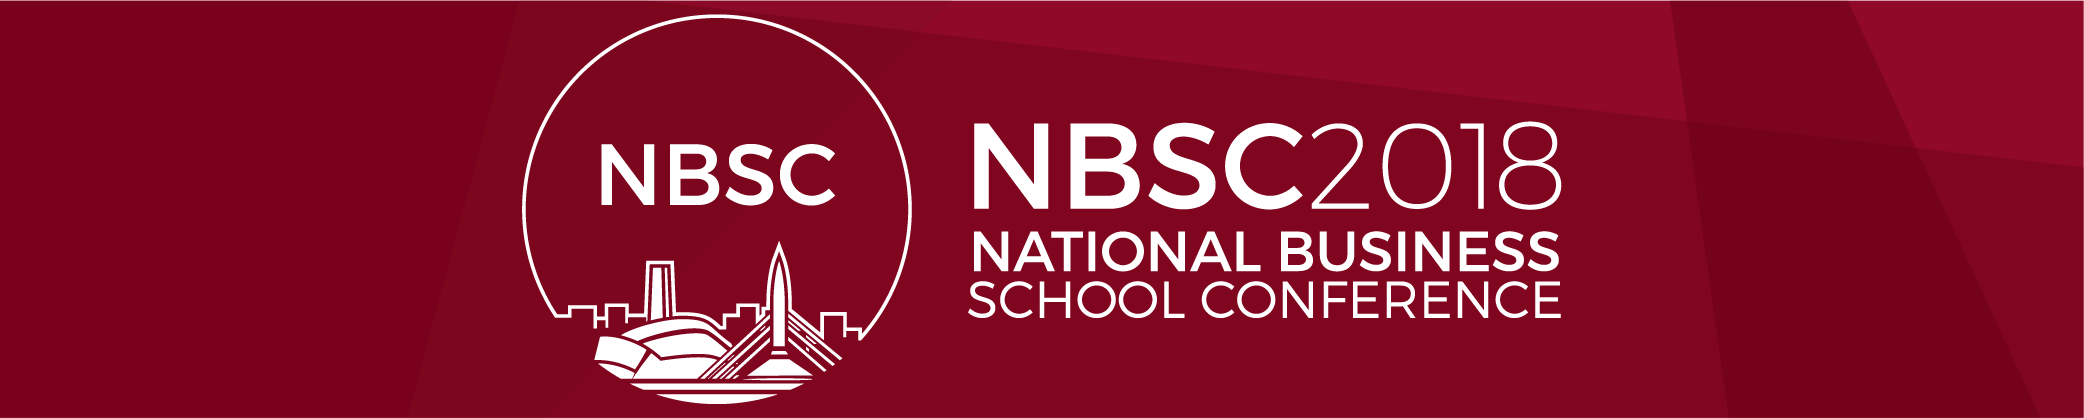 NBSC Committee